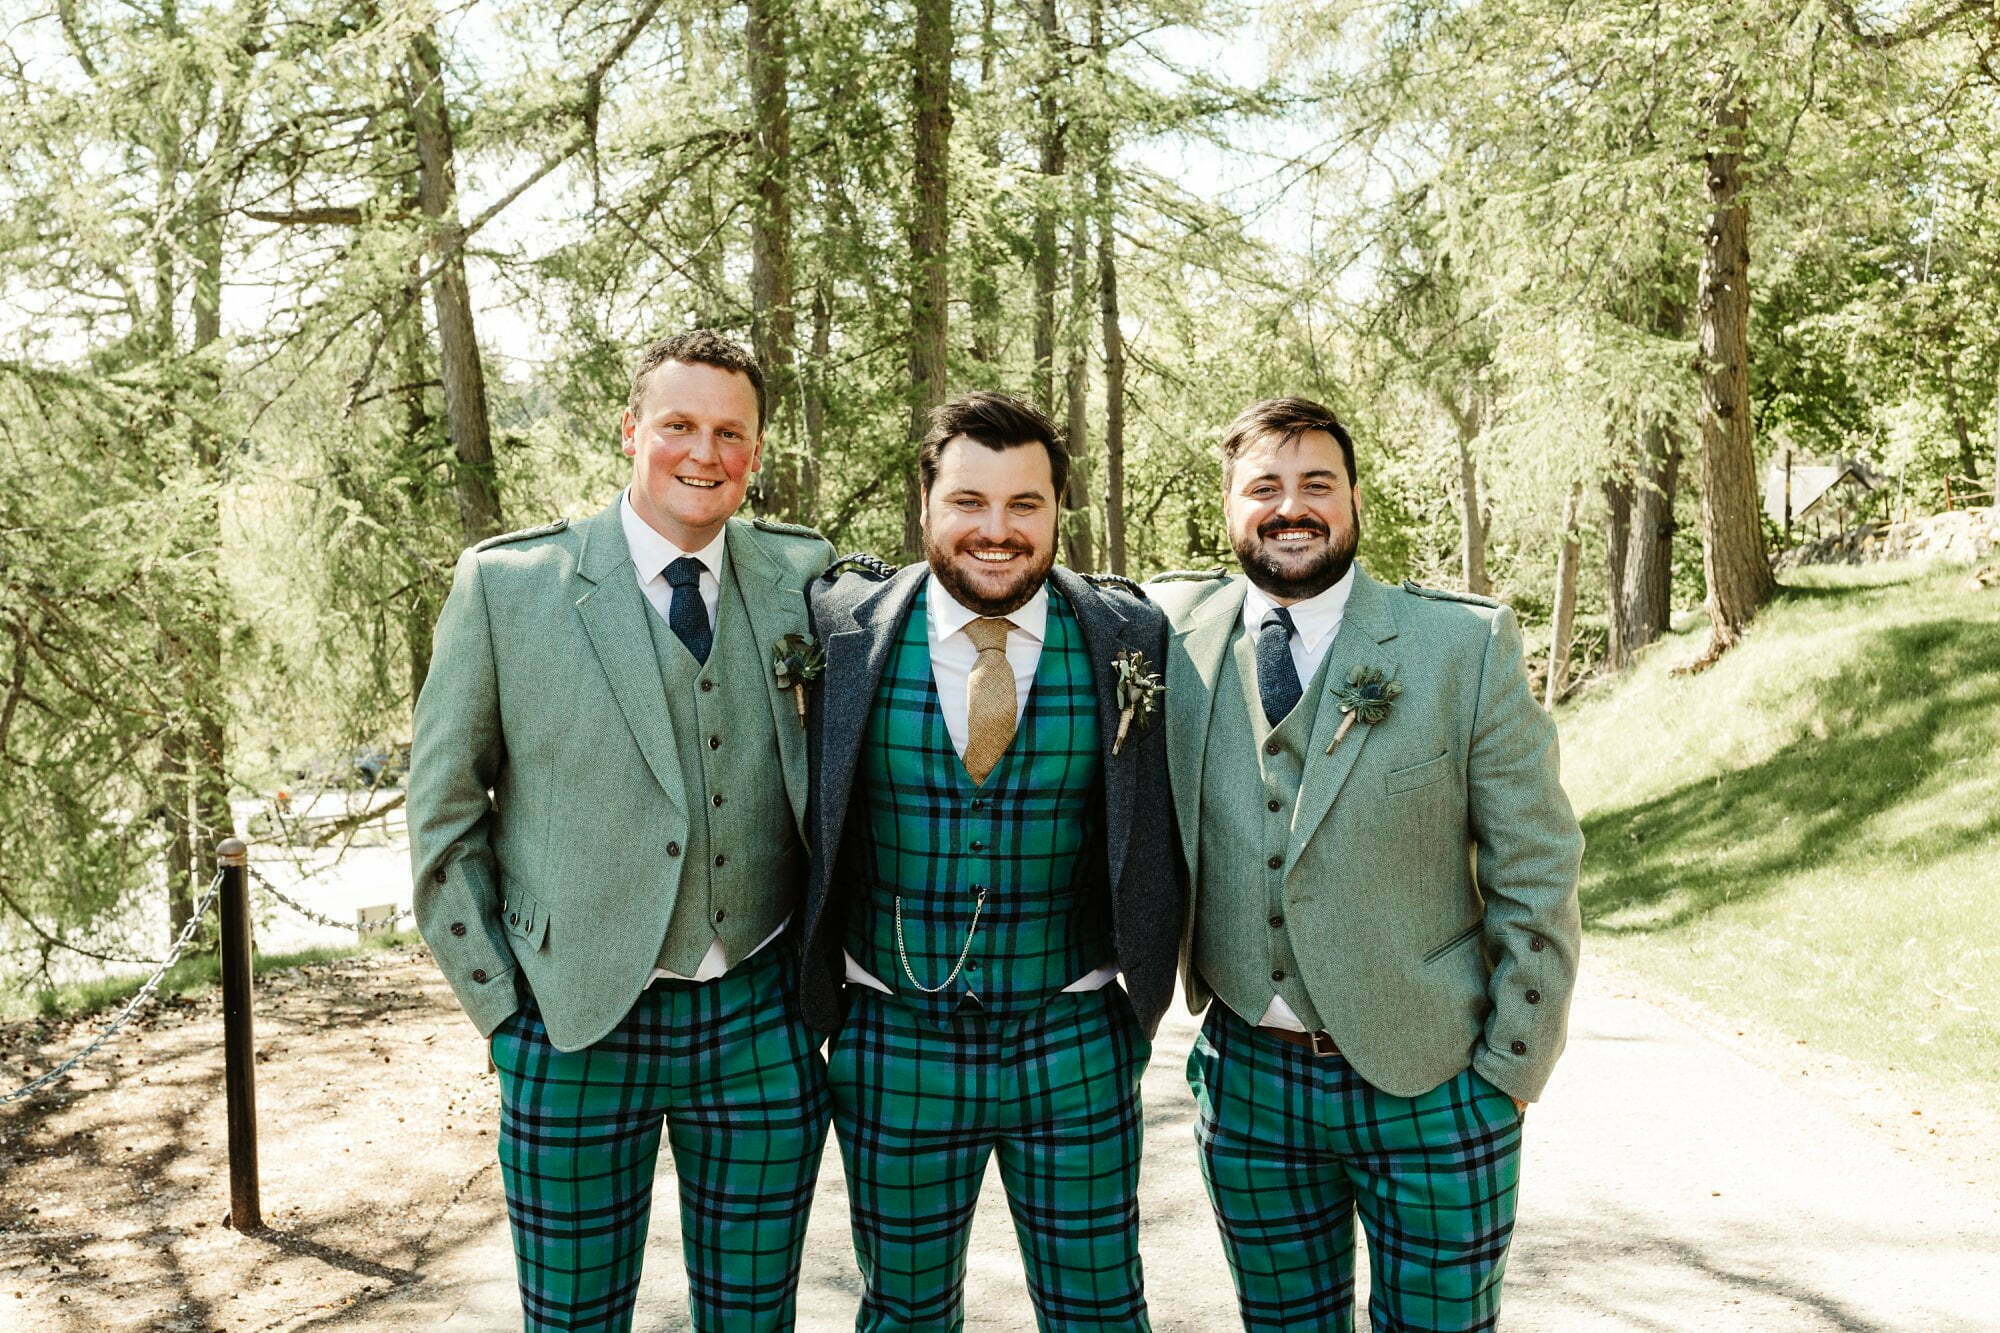 fife arms braemar micro wedding groomsmen groom tartan troos trousers outfits green jackets